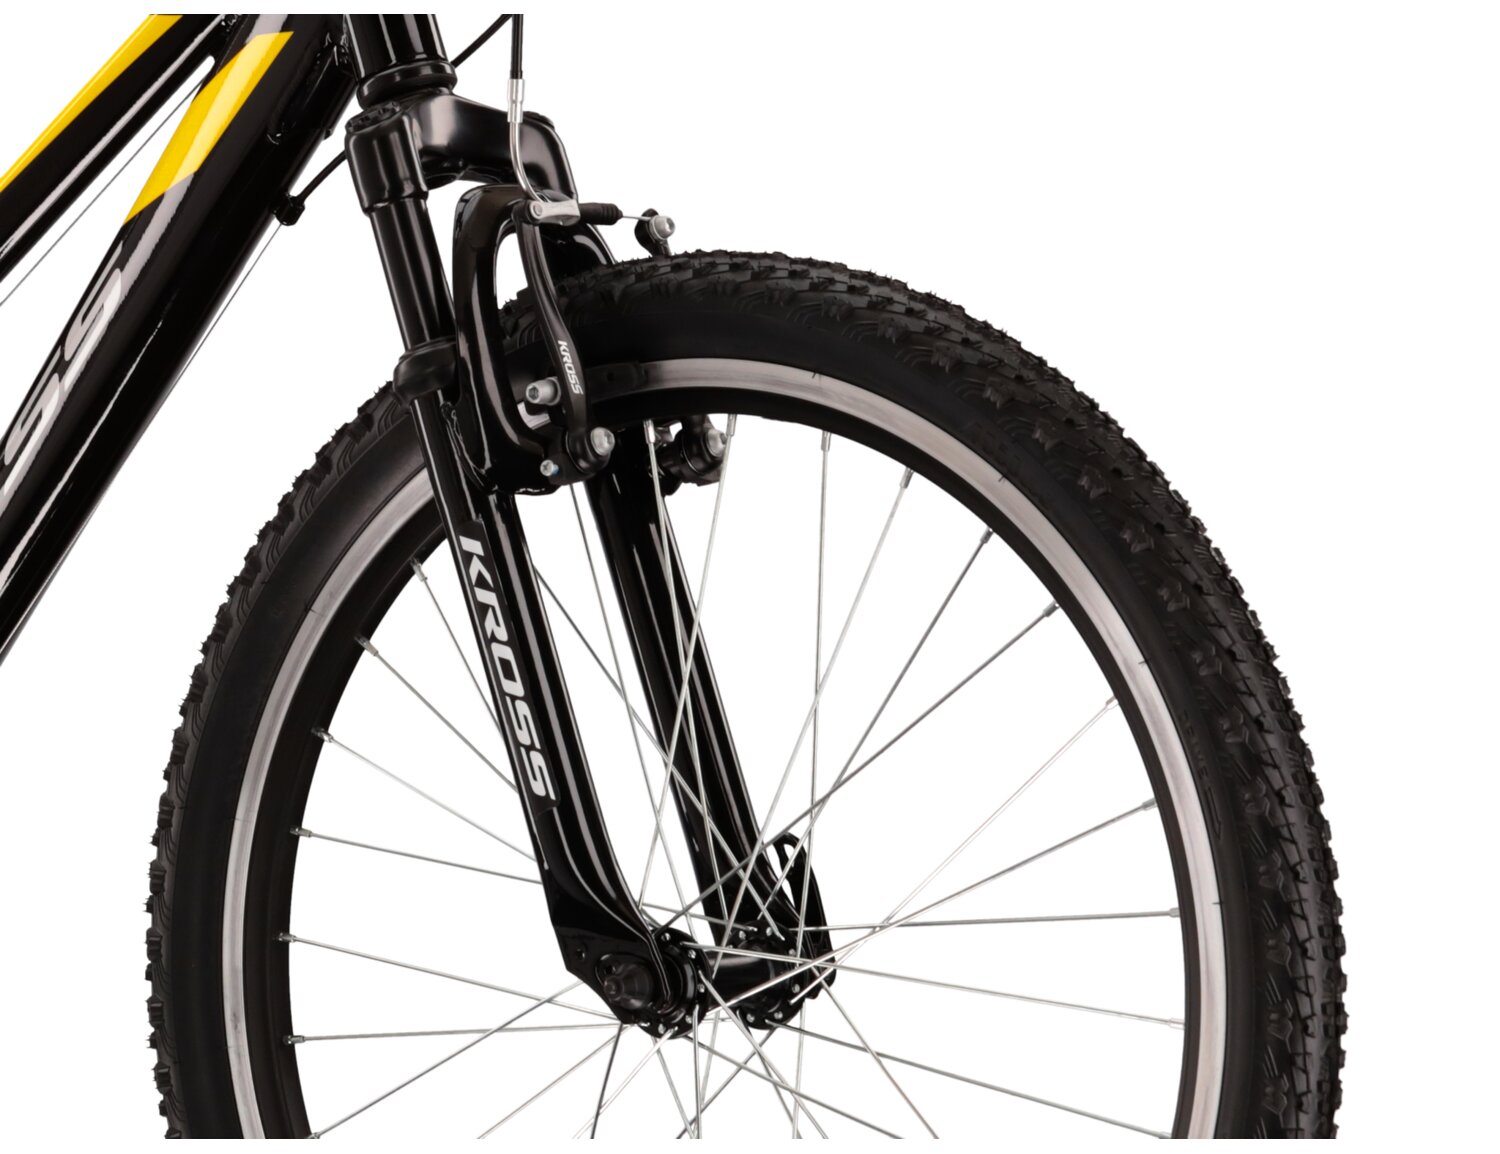  Aluminowa rama, amortyzowany widelec o skoku 40mm oraz opony o szerokości 1,95 cala w rowerze juniorskim KROSS Hexagon JR 1.0 